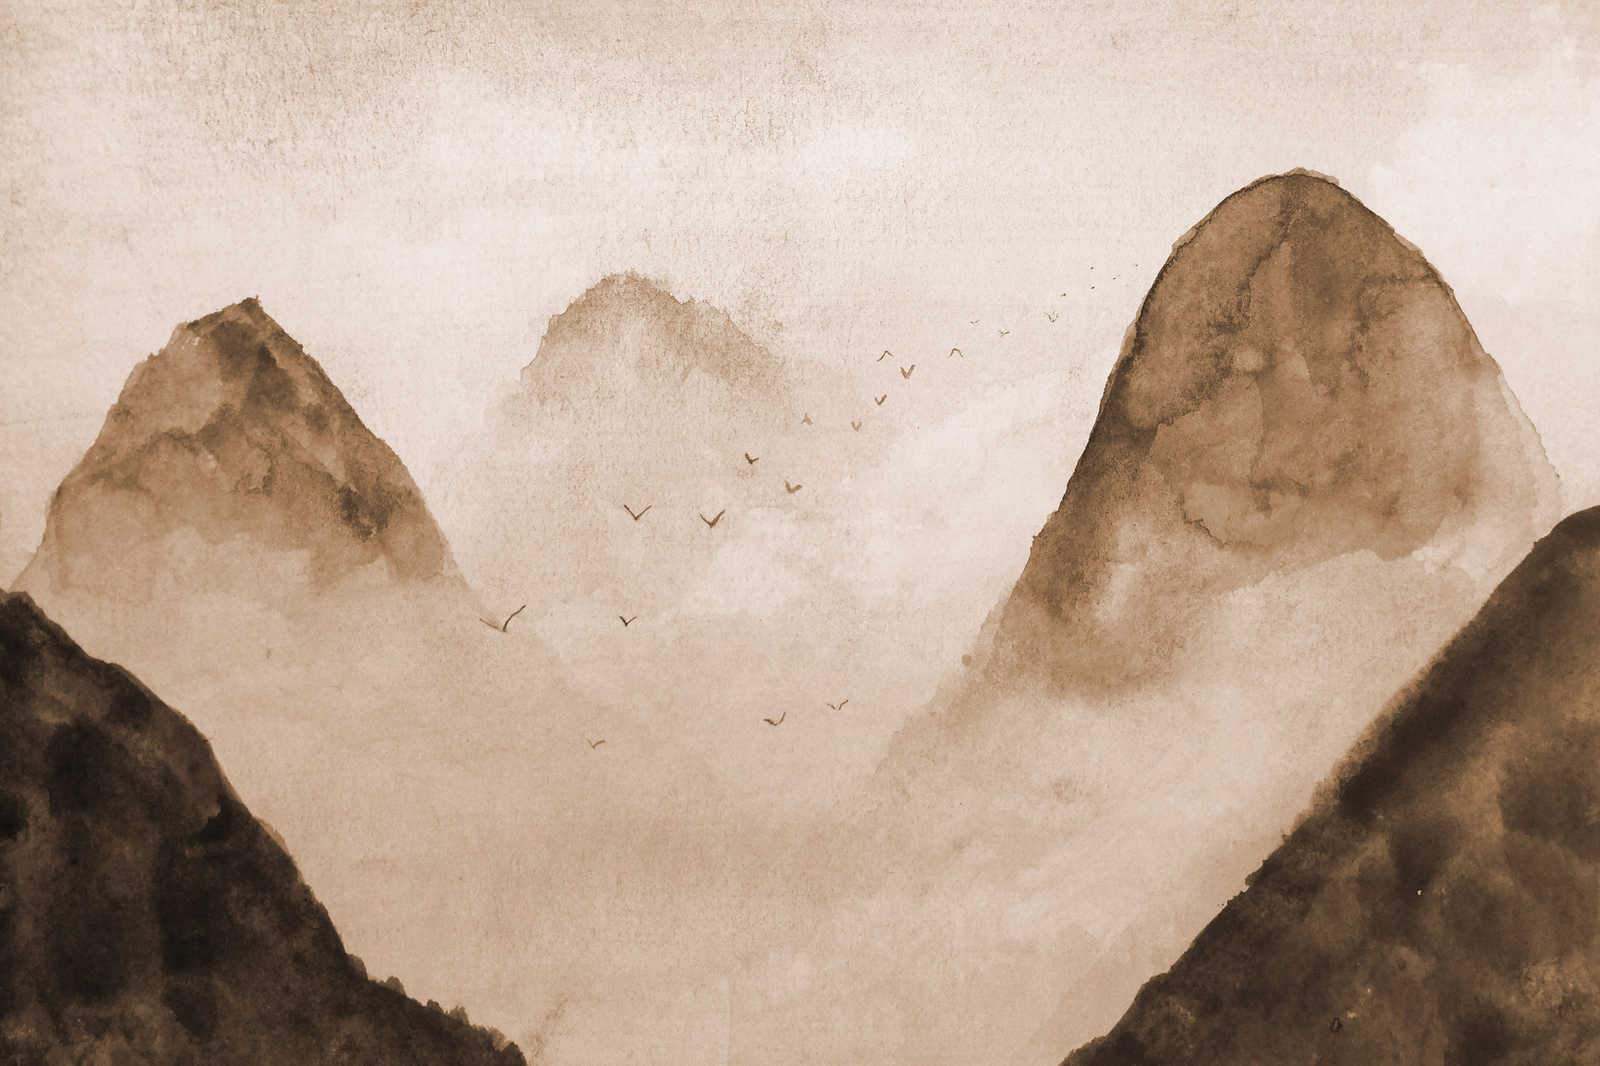             Leinwand Nebel Landschaft – 0,90 m x 0,60 m
        